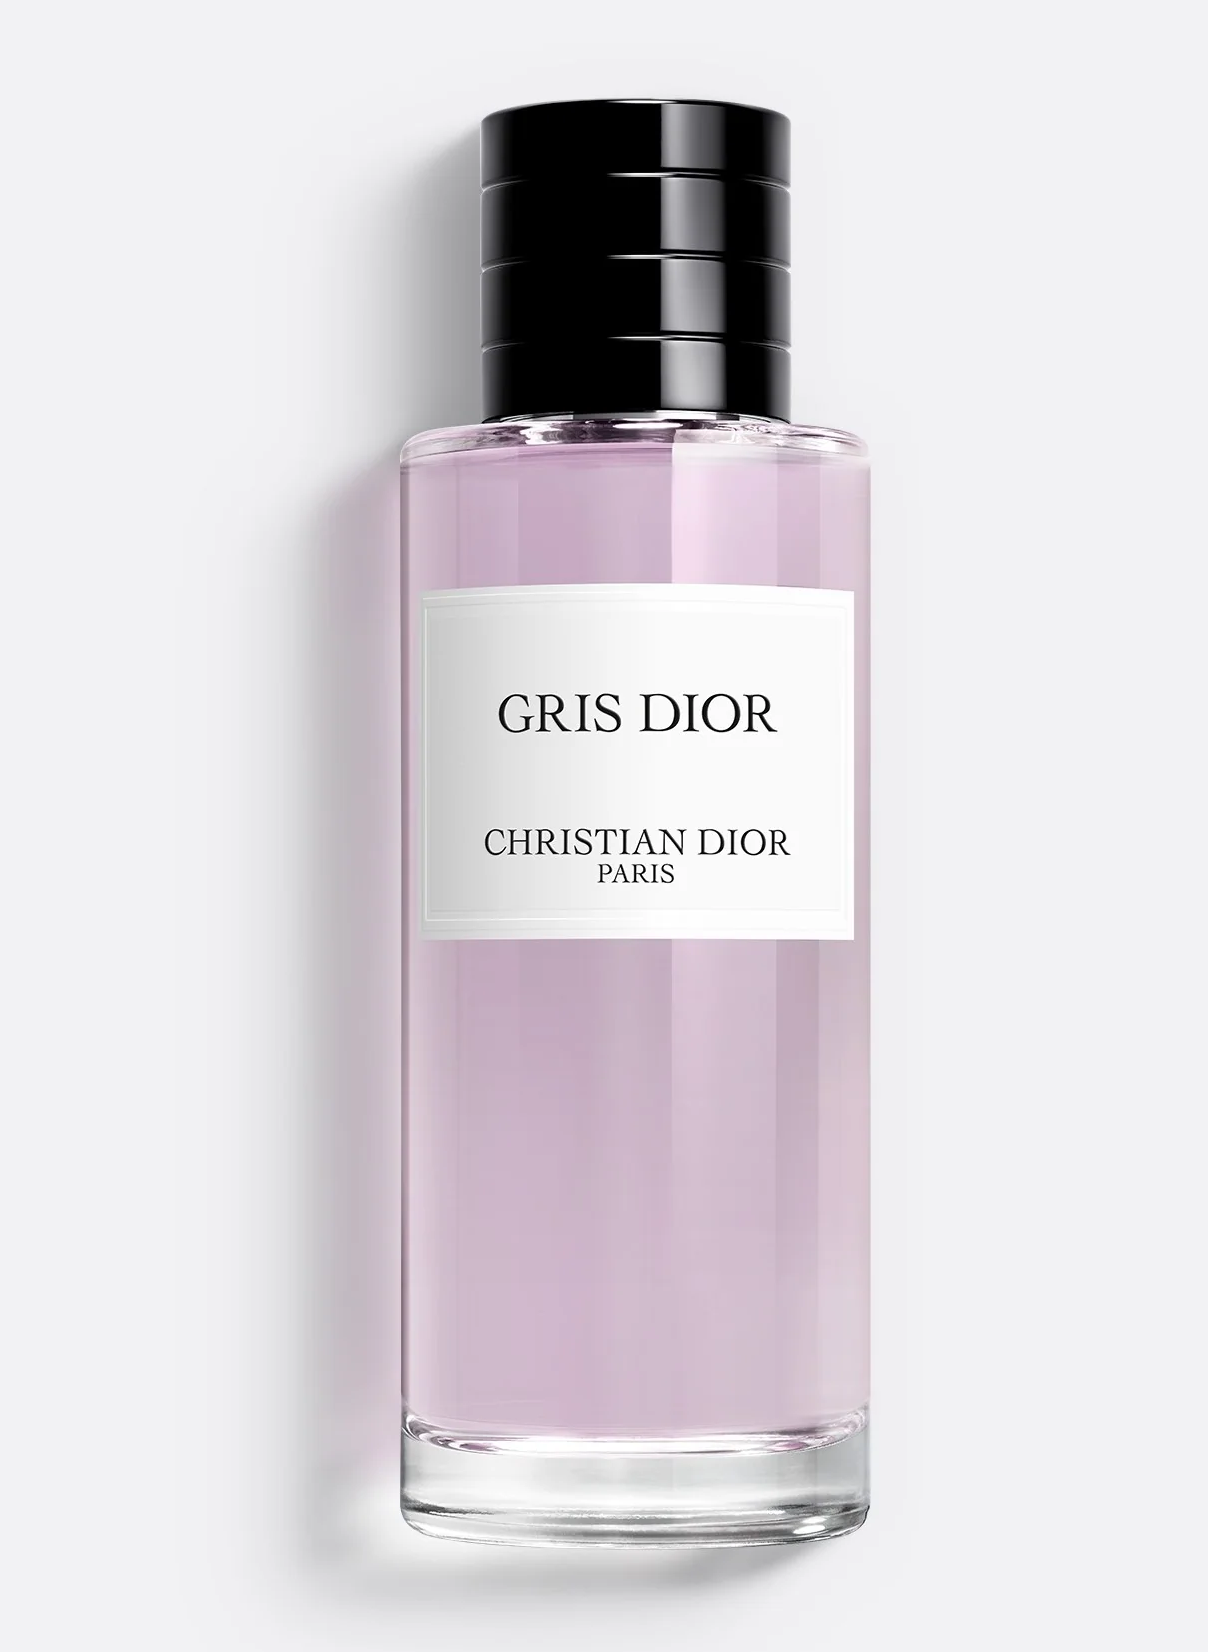 Christian Dior Gris Dior 125ml